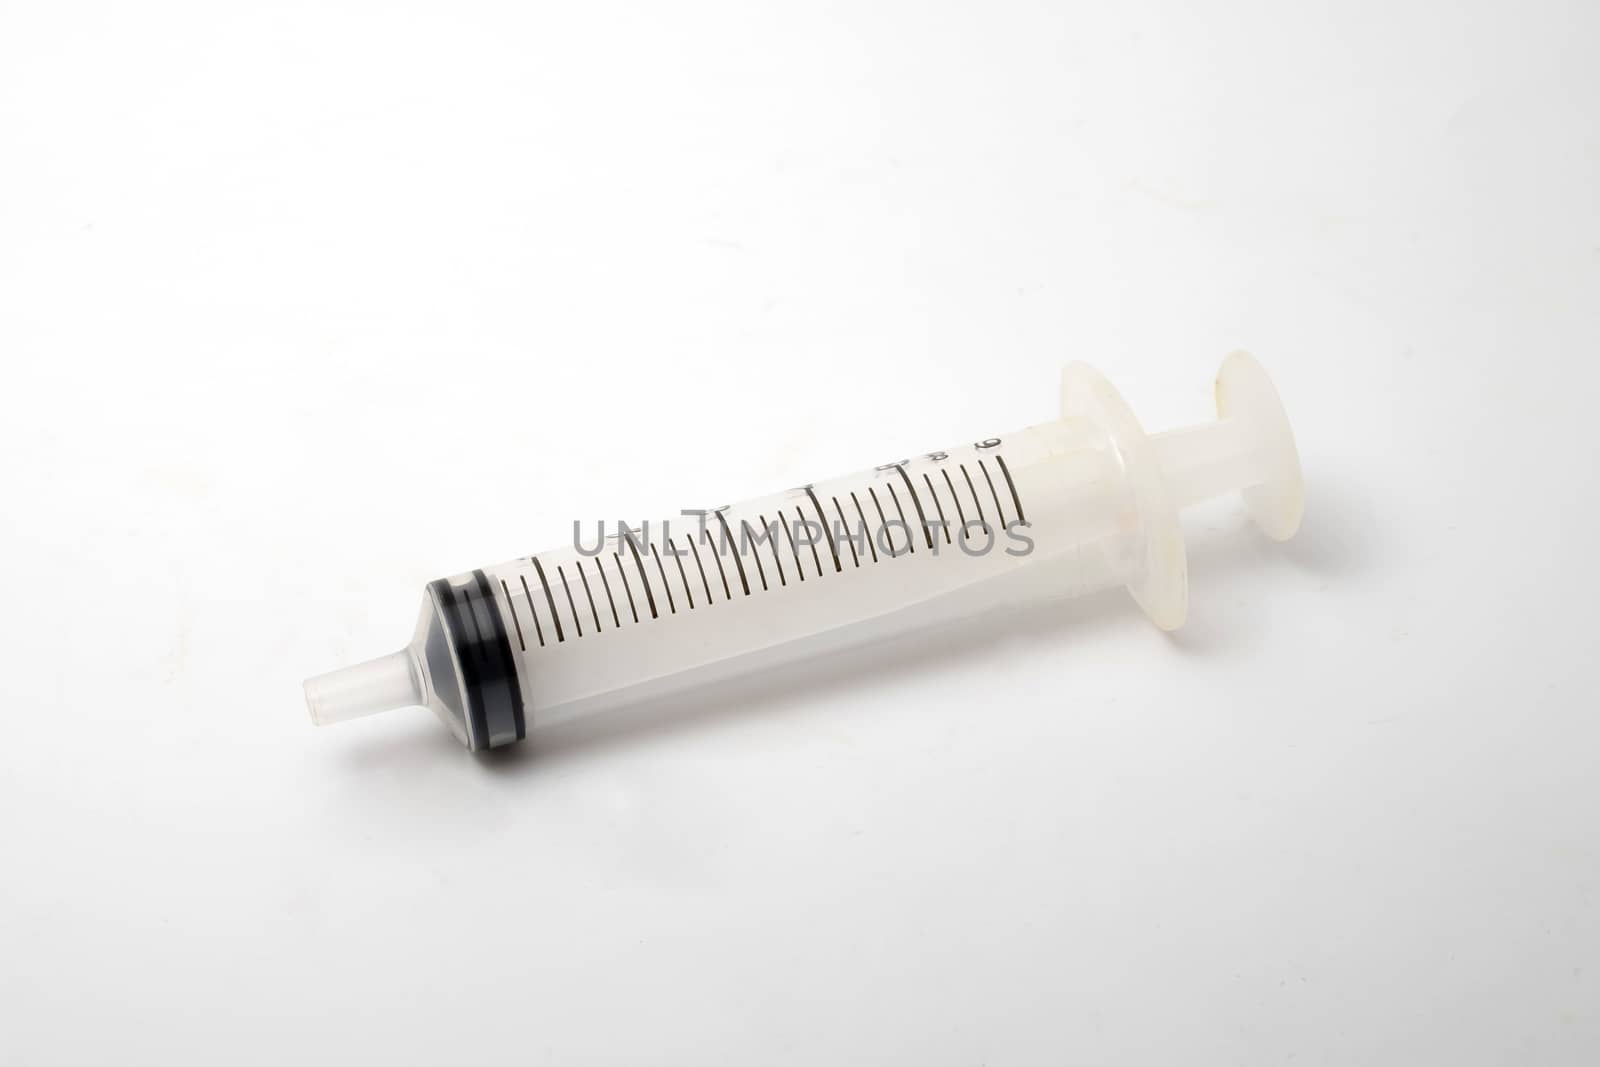 Large feeding syringe isolated on a white background by art9858